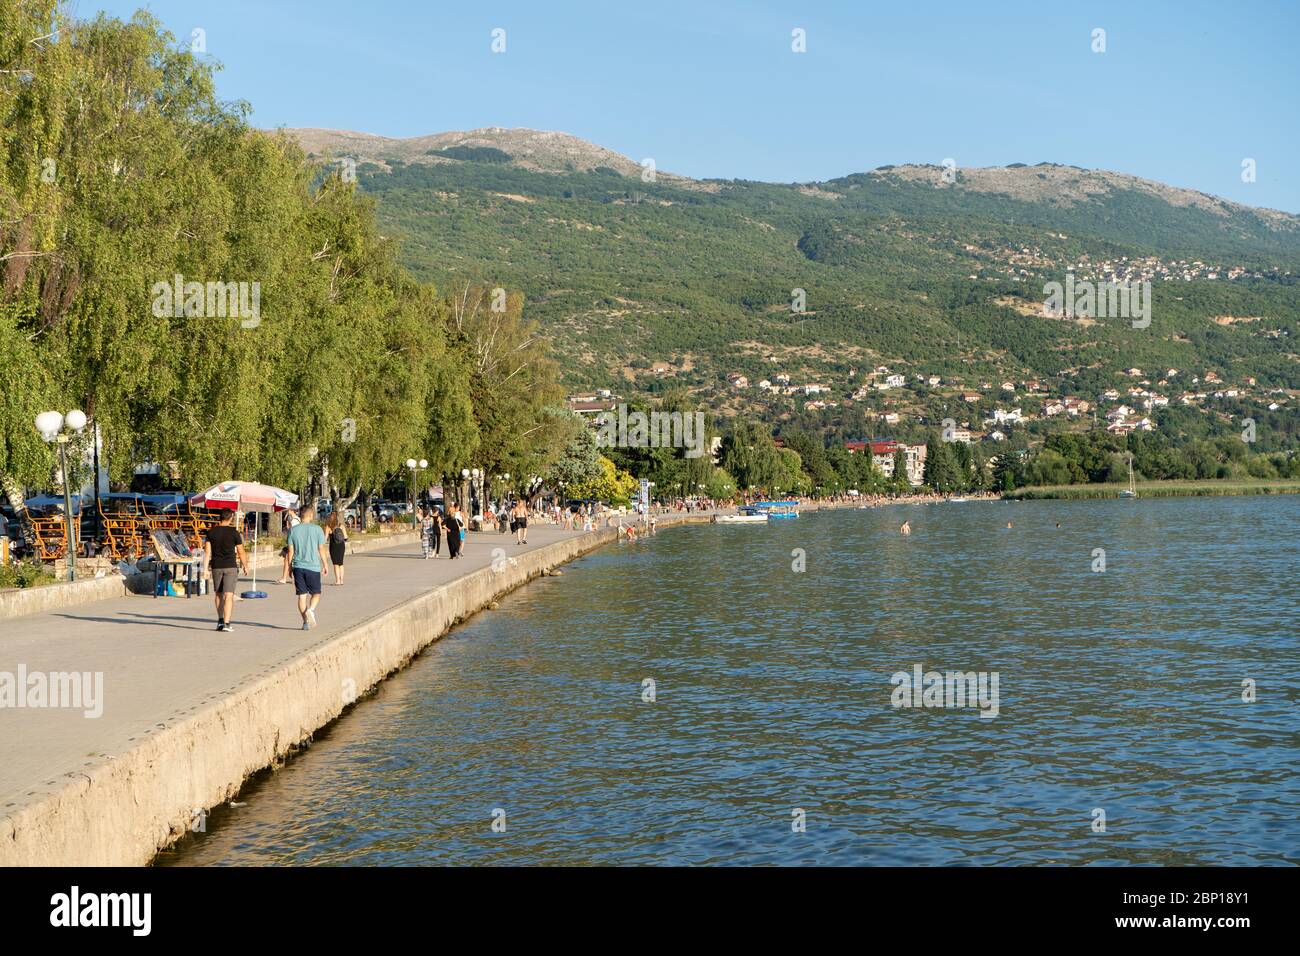 Passeggiata del Lago Ohrid. La gente cammina durante il tramonto. Agosto 2019 Foto Stock